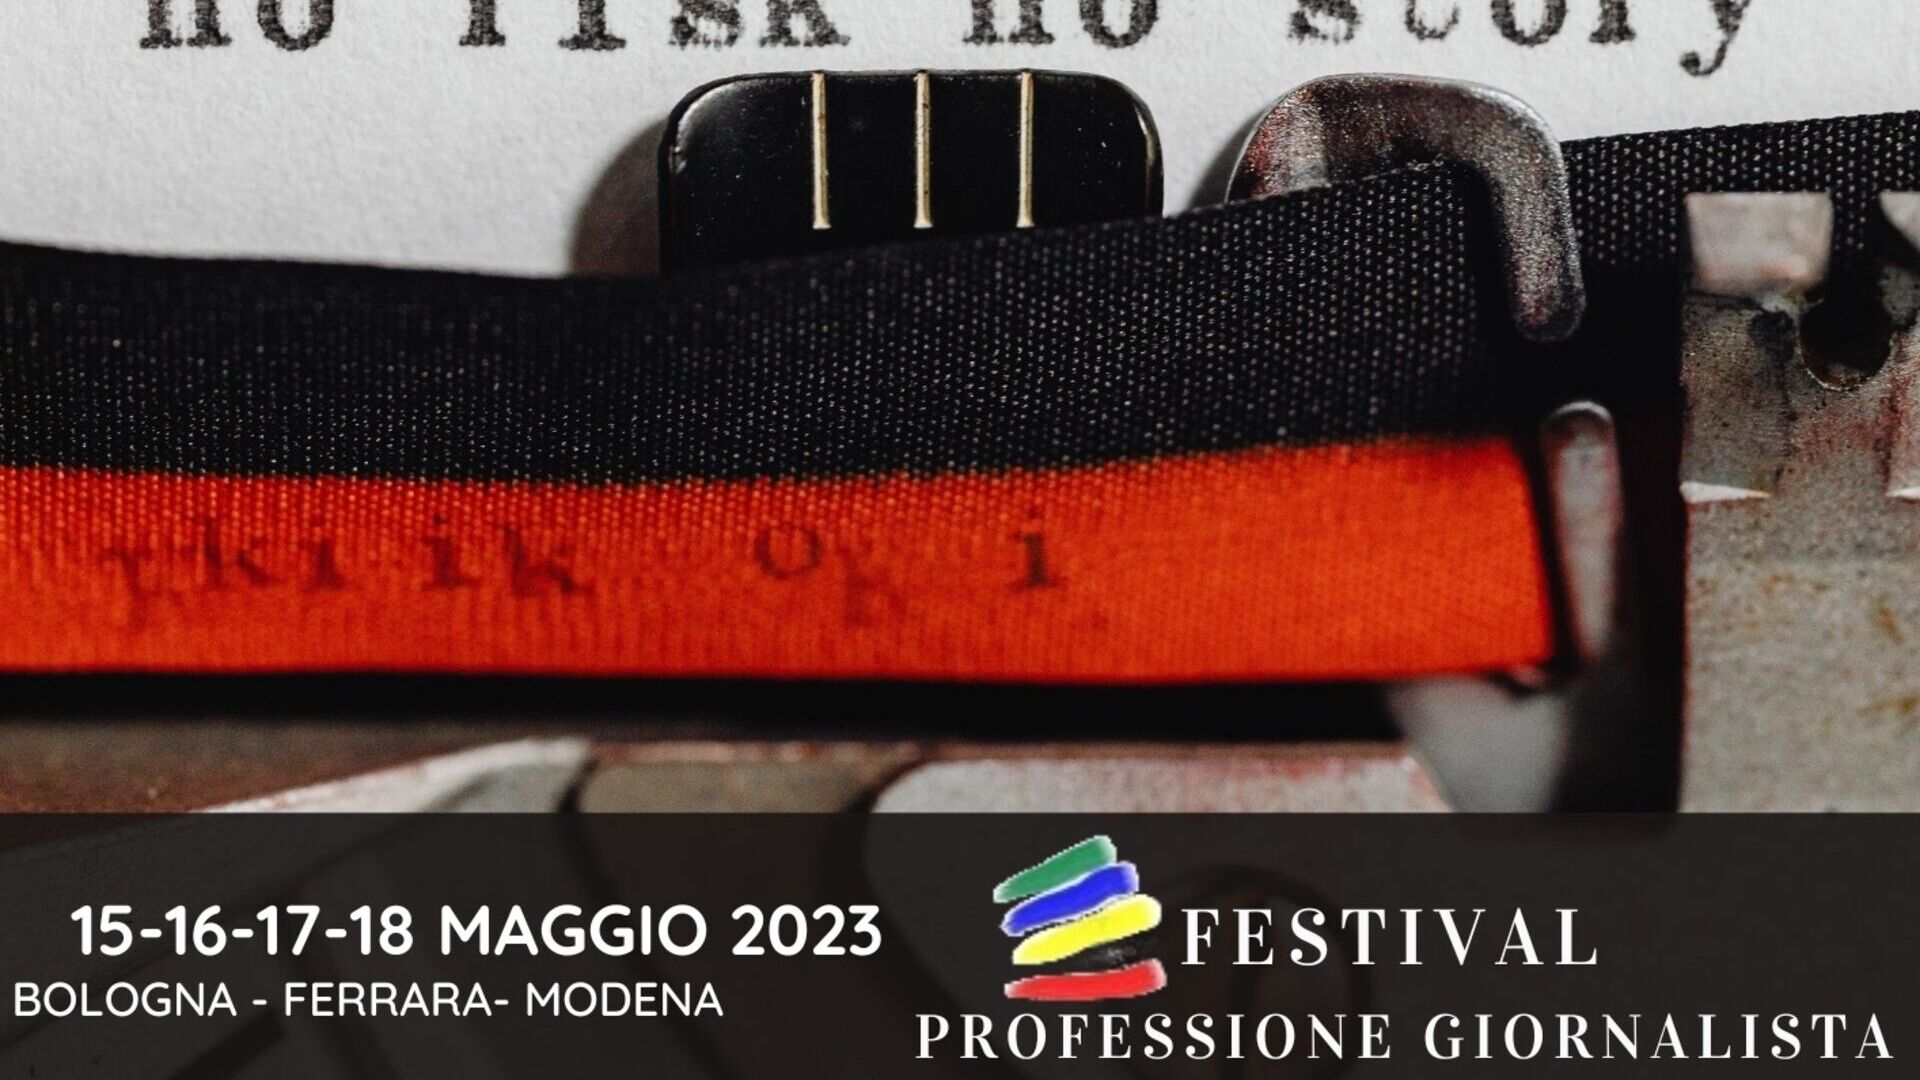 Starf blaðamanns: lykilmynd 2023 útgáfunnar af "Professione Giornalista" hátíðinni (Bologna, Ferrara, Modena, 15-16-17-18 maí)